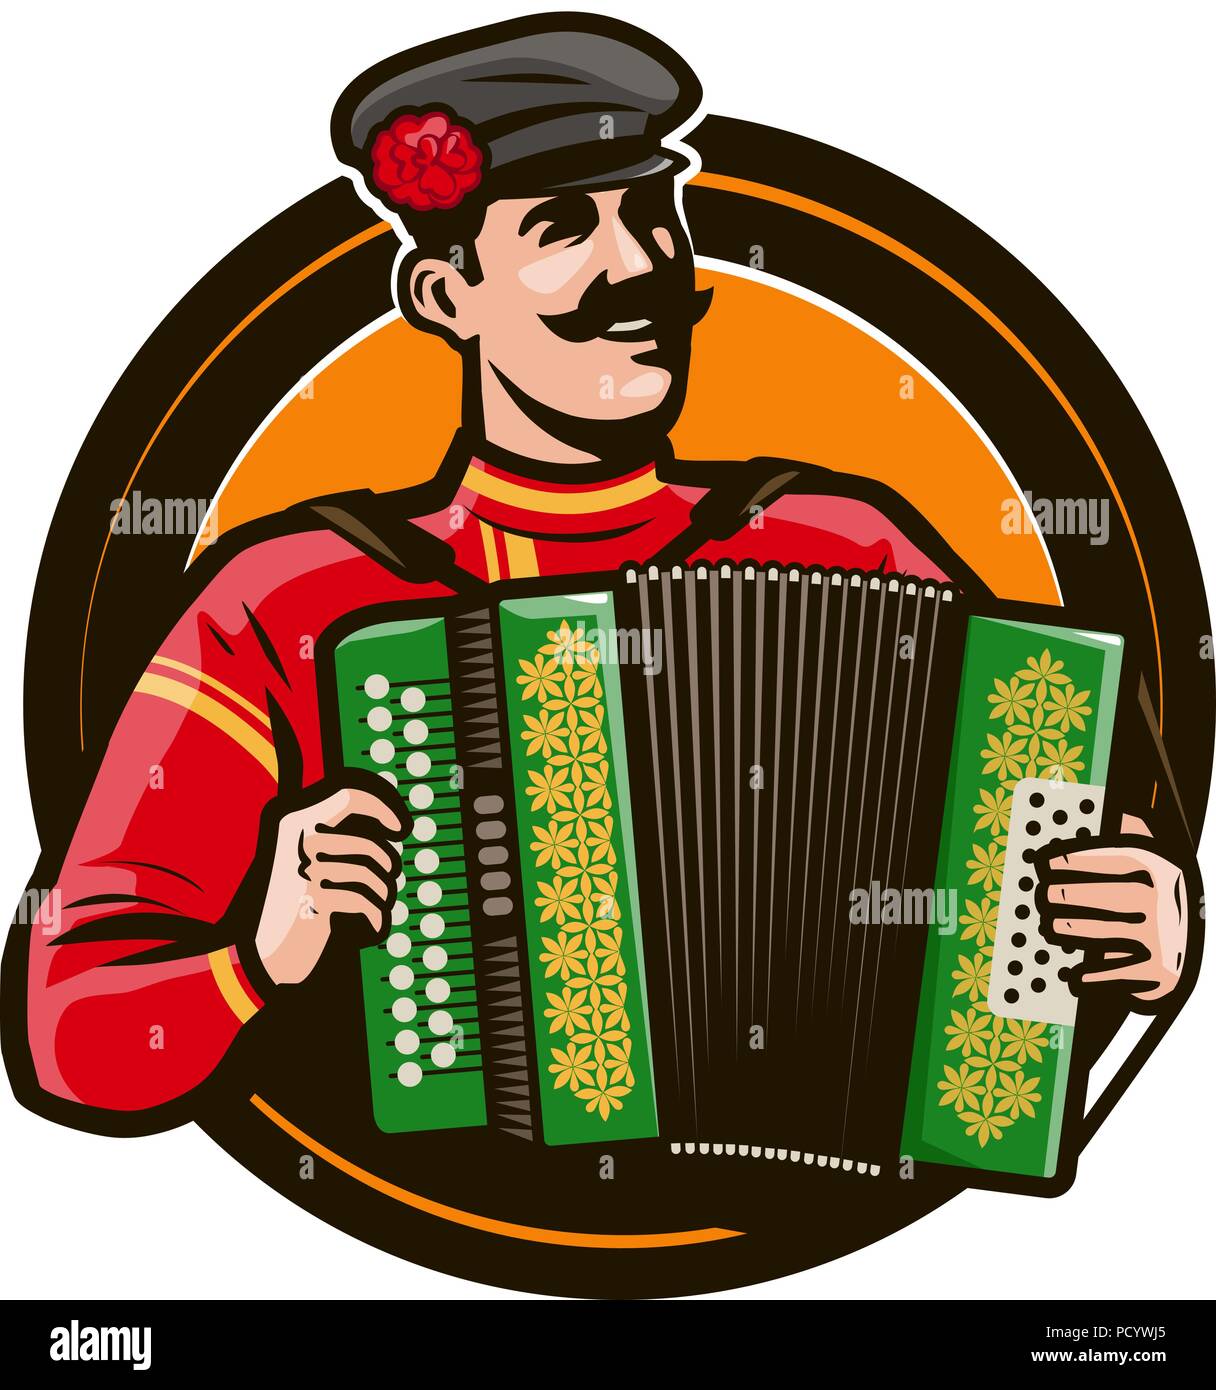 Gerne Akkordeon spieler in den nationalen Kostüm spielen ein Musikinstrument. Russische Folklore, Musik Konzept. Cartoon Vector Illustration Stock Vektor